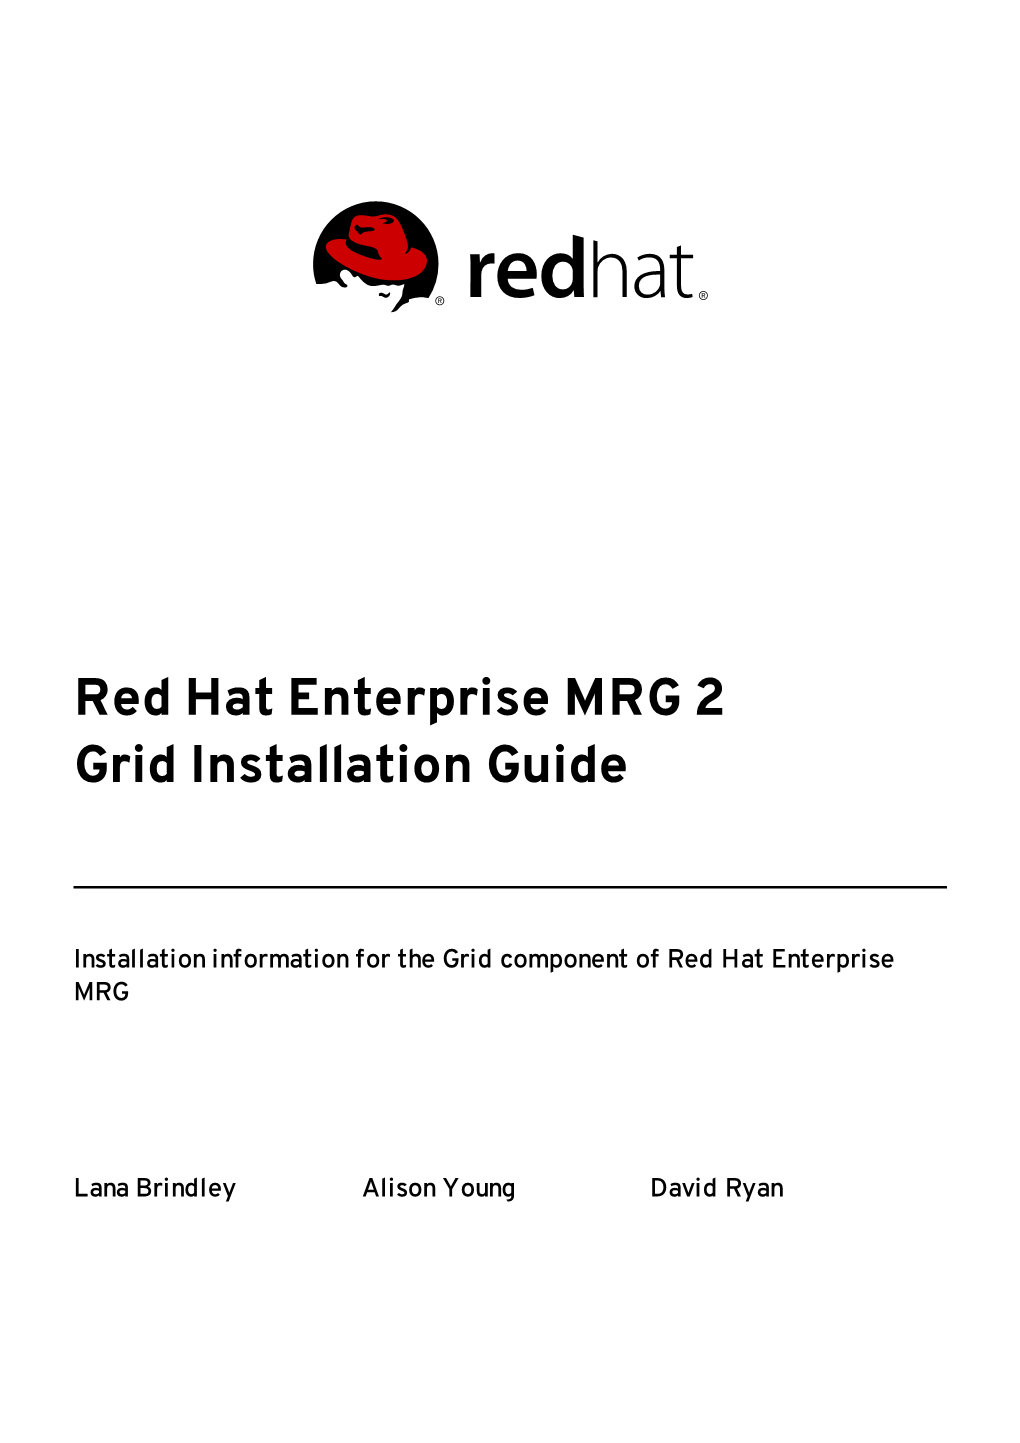 Red Hat Enterprise MRG 2 Grid Installation Guide